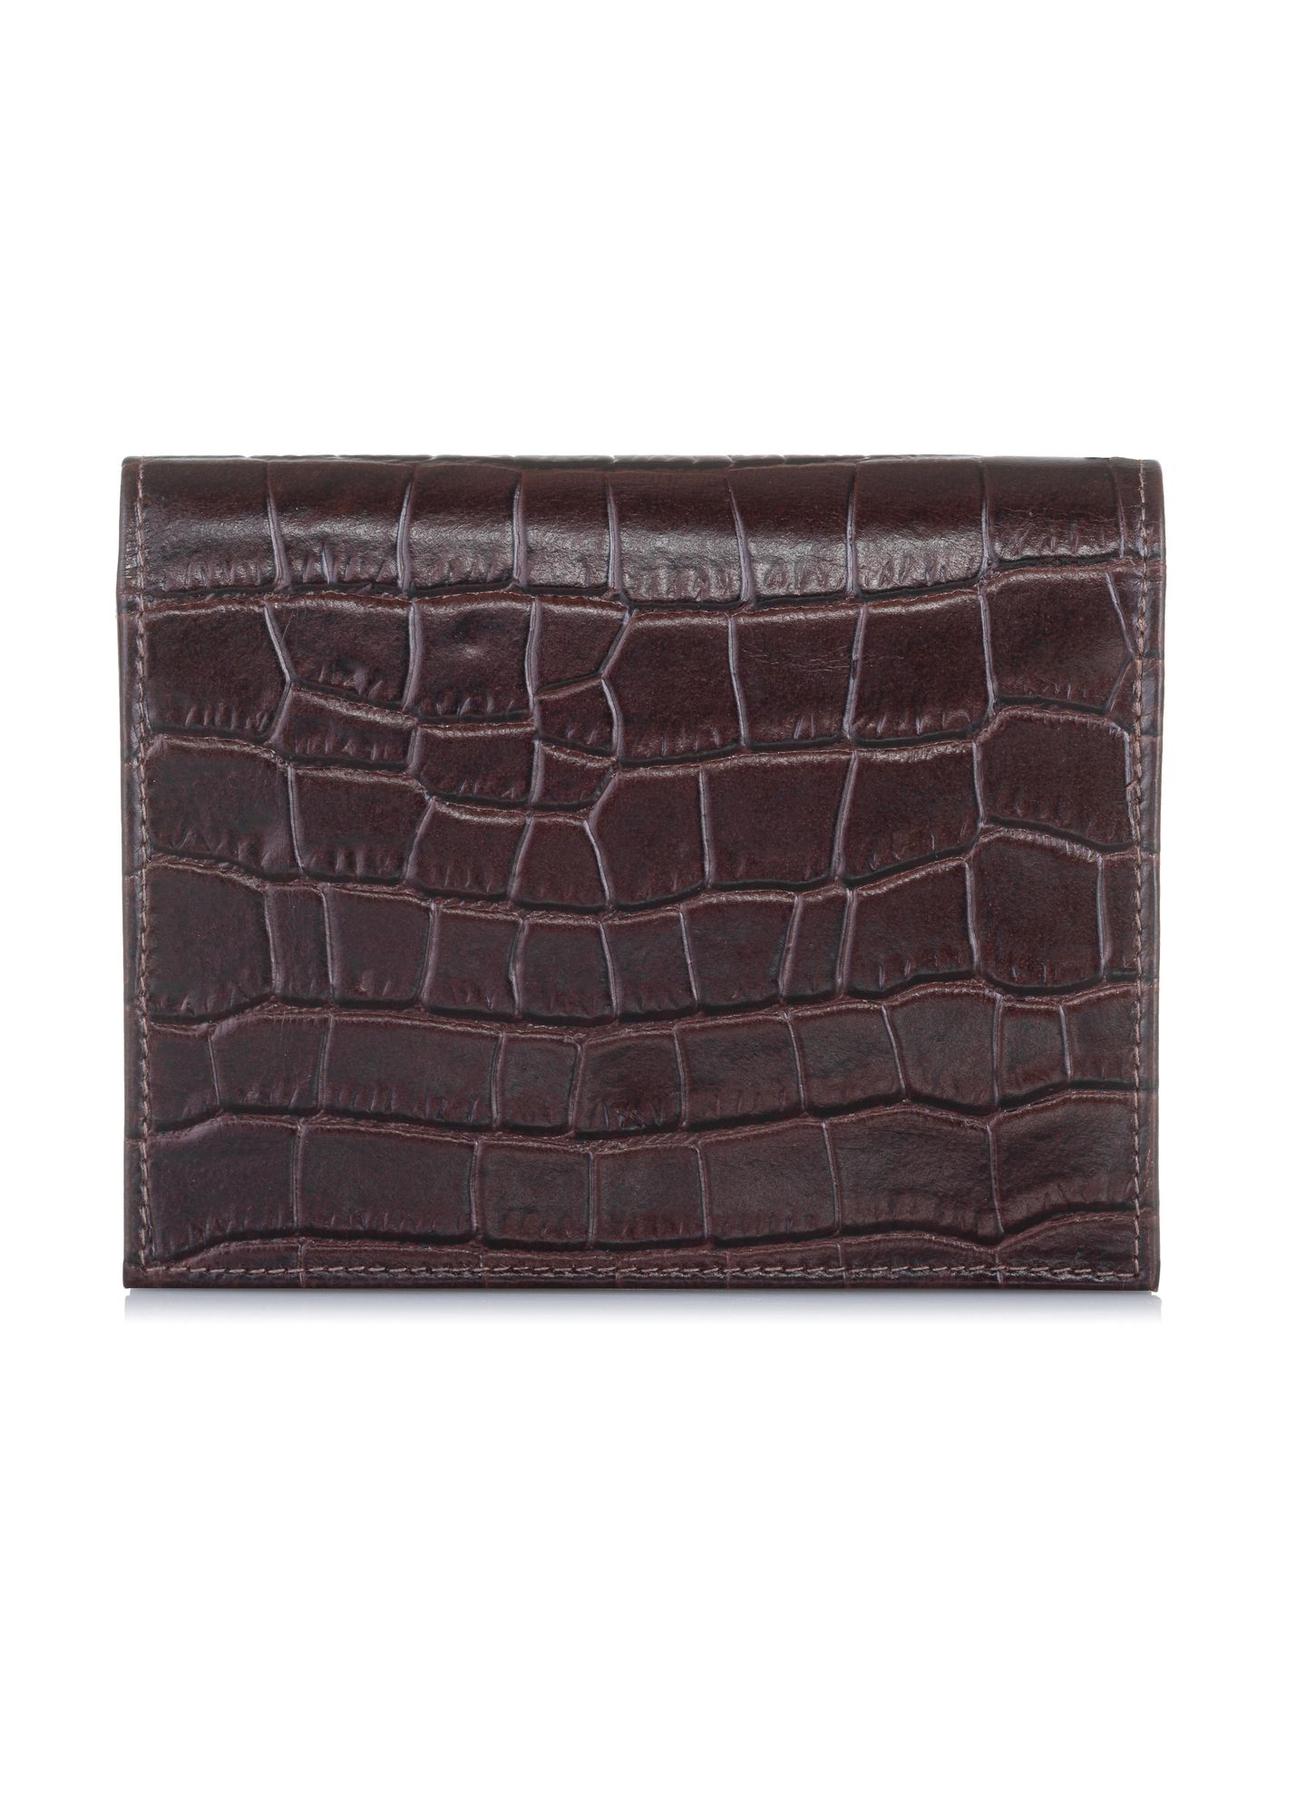 Mały brązowy portfel damski croco PORES-0846-89(W23)